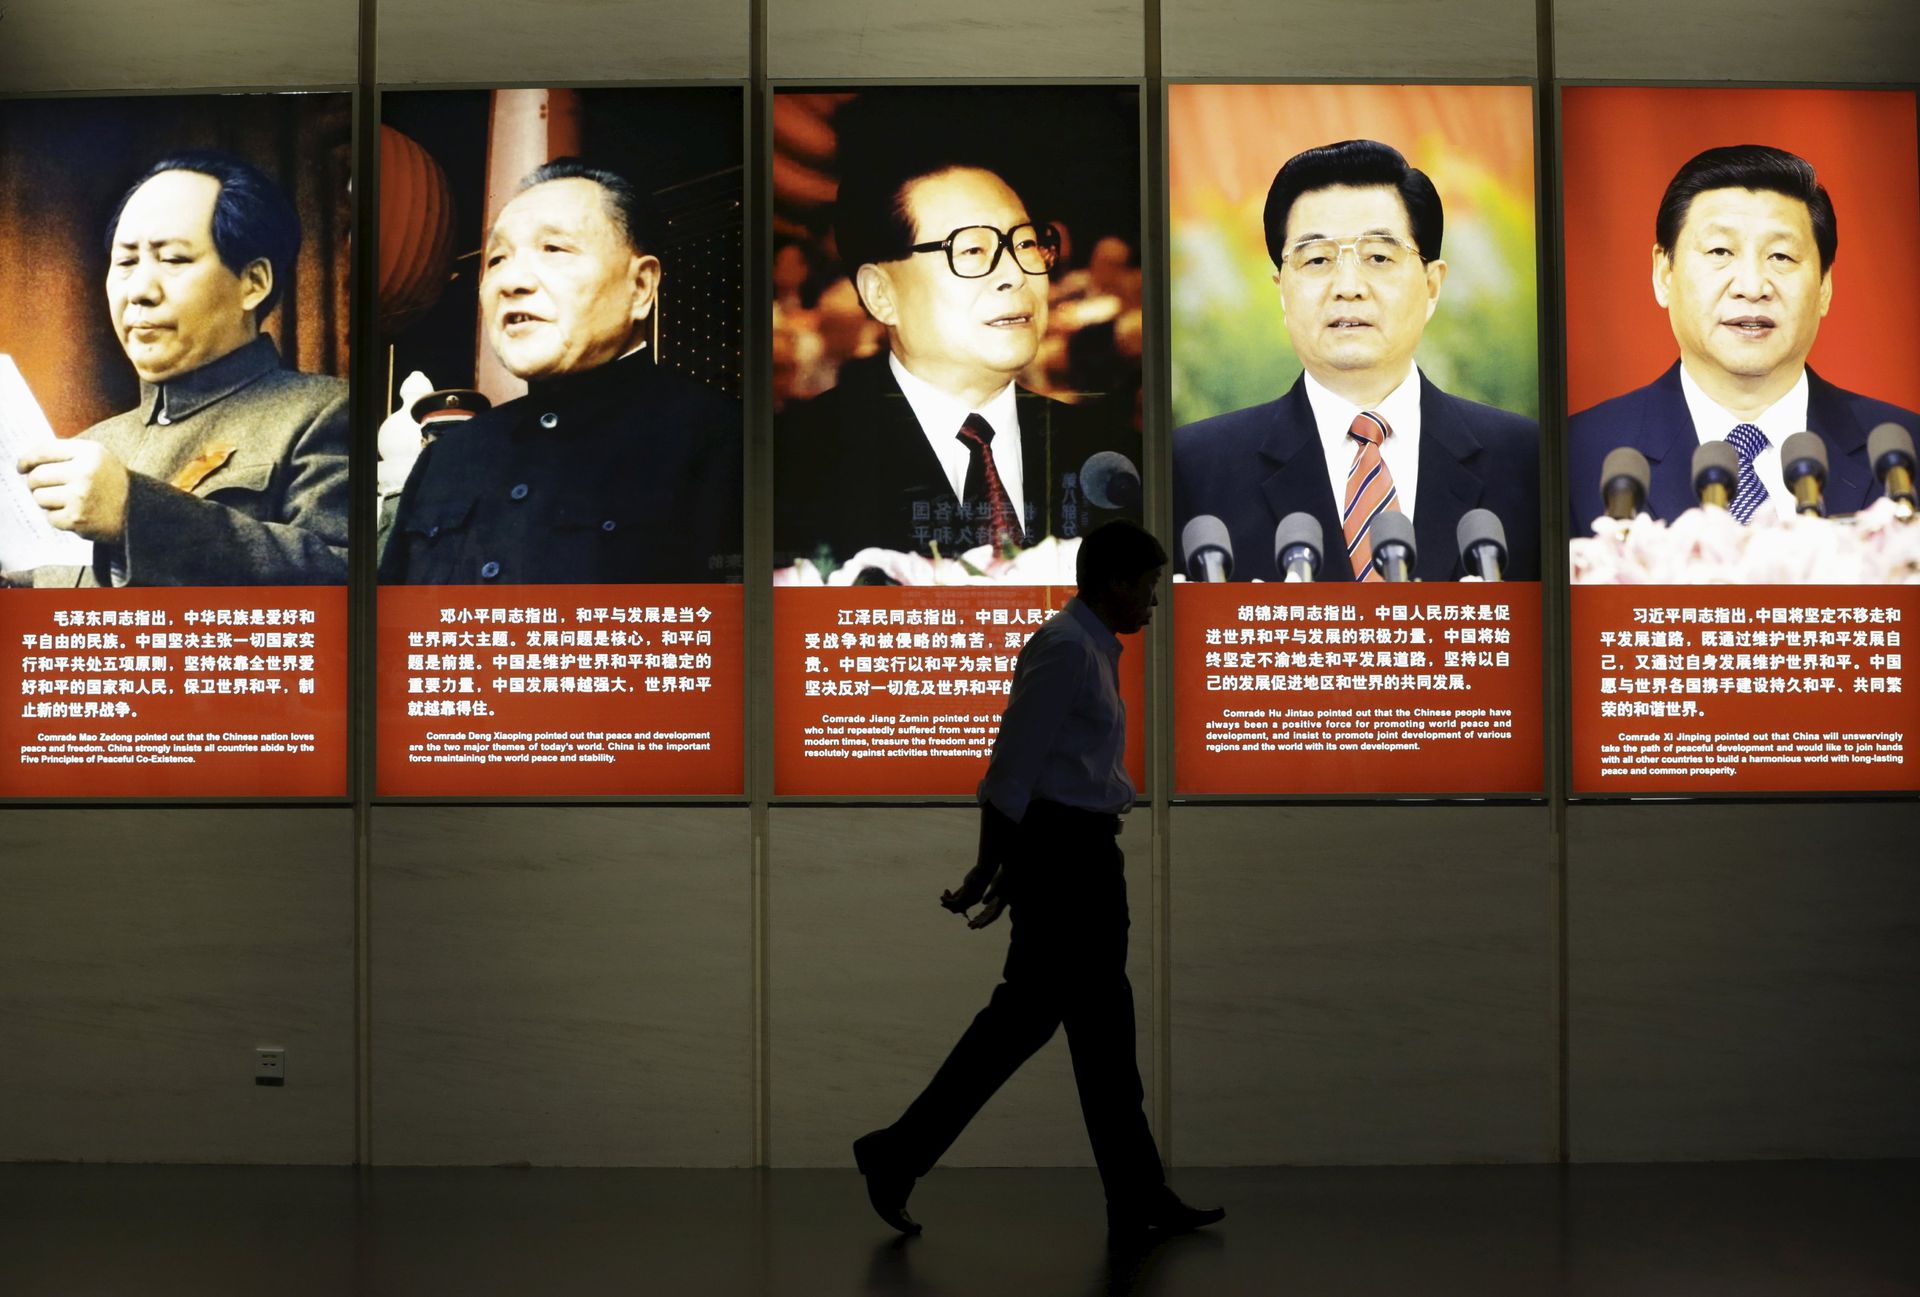 中共发布100句党史名言 毛泽东与习近平名言各占30句 多维新闻 中国